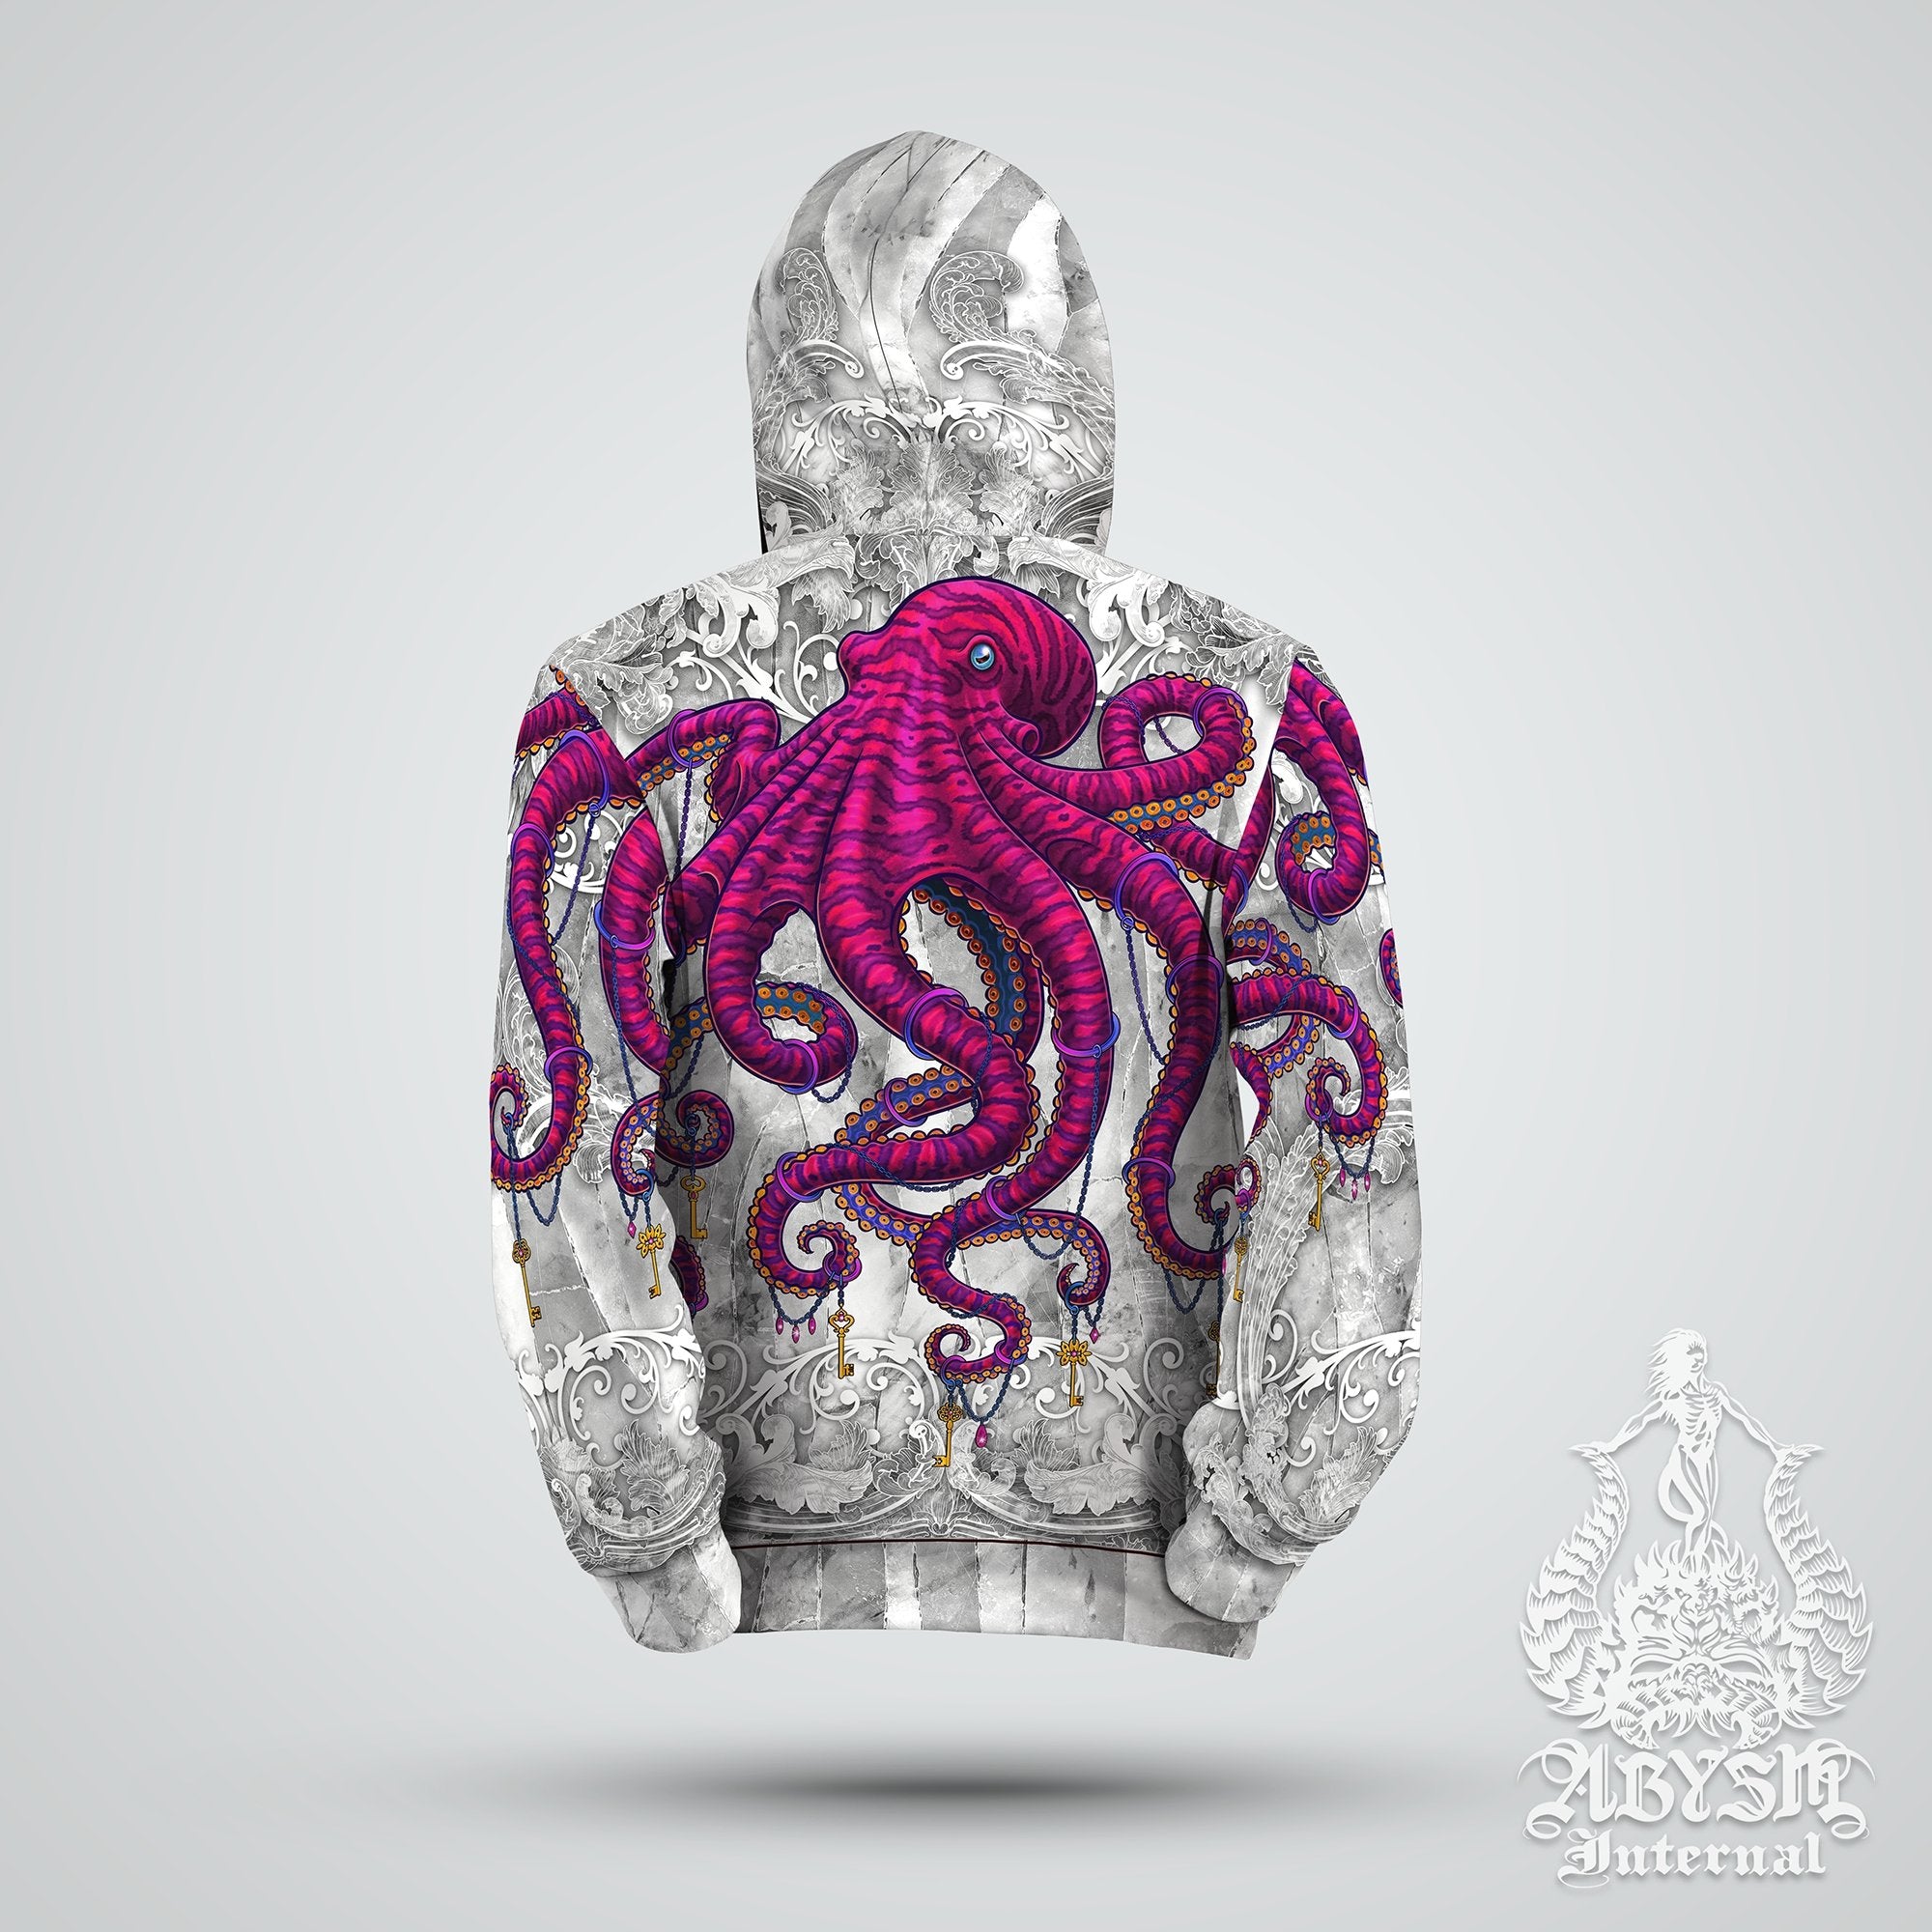 Indie Hoodie, Octopus Street Outfit, Beach Streetwear, Alternative Clothing, Unisex - Stone Pink - Abysm Internal